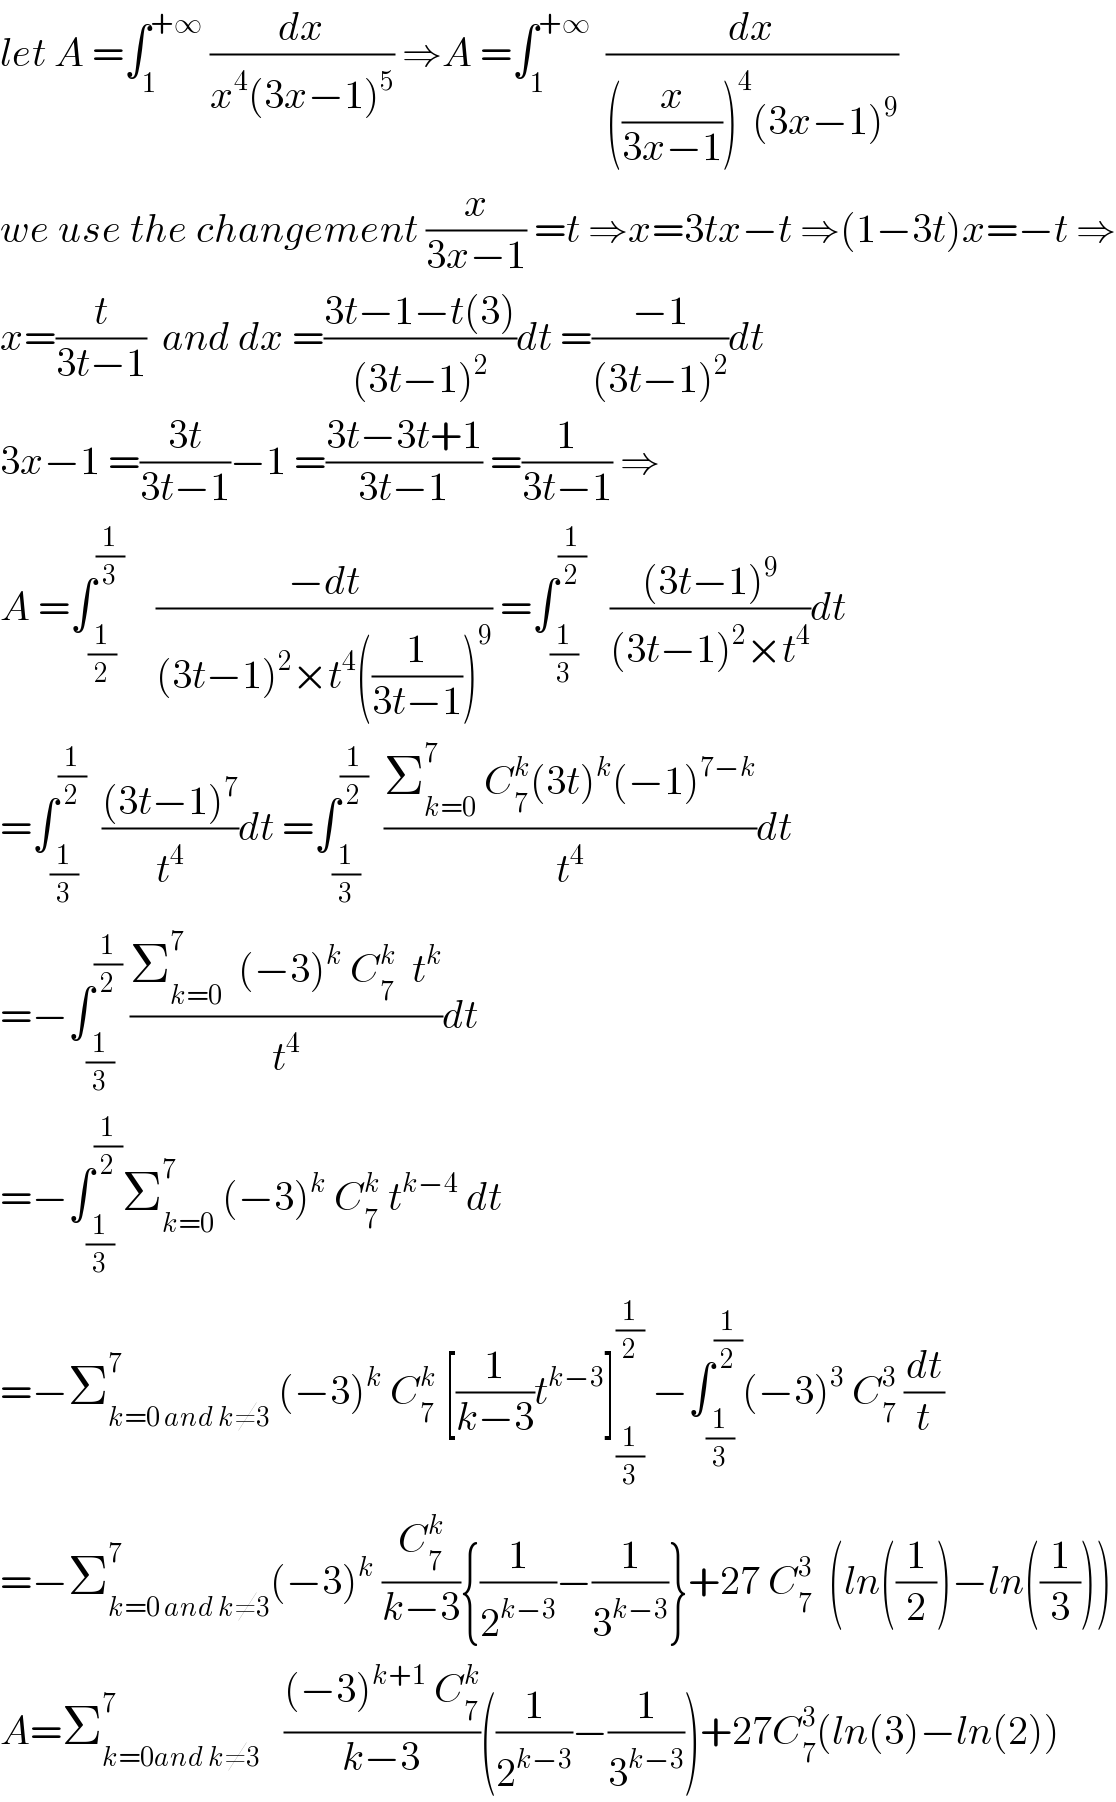 let A =∫_1 ^(+∞)  (dx/(x^4 (3x−1)^5 )) ⇒A =∫_1 ^(+∞)   (dx/(((x/(3x−1)))^4 (3x−1)^9 ))  we use the changement (x/(3x−1)) =t ⇒x=3tx−t ⇒(1−3t)x=−t ⇒  x=(t/(3t−1))  and dx =((3t−1−t(3))/((3t−1)^2 ))dt =((−1)/((3t−1)^2 ))dt  3x−1 =((3t)/(3t−1))−1 =((3t−3t+1)/(3t−1)) =(1/(3t−1)) ⇒  A =∫_(1/2) ^(1/3)     ((−dt)/((3t−1)^2 ×t^4 ((1/(3t−1)))^9 )) =∫_(1/3) ^(1/2)    (((3t−1)^9 )/((3t−1)^2 ×t^4 ))dt  =∫_(1/3) ^(1/2)   (((3t−1)^7 )/t^4 )dt =∫_(1/3) ^(1/2)   ((Σ_(k=0) ^7  C_7 ^k (3t)^k (−1)^(7−k) )/t^4 )dt  =−∫_(1/3) ^(1/2)  ((Σ_(k=0) ^7   (−3)^k  C_7 ^k   t^k )/t^4 )dt  =−∫_(1/3) ^(1/2) Σ_(k=0) ^7  (−3)^k  C_7 ^k  t^(k−4)  dt  =−Σ_(k=0 and k≠3) ^7  (−3)^k  C_7 ^k  [(1/(k−3))t^(k−3) ]_(1/3) ^(1/2)  −∫_(1/3) ^(1/2) (−3)^3  C_7 ^3  (dt/t)  =−Σ_(k=0 and k≠3) ^7 (−3)^k  (C_7 ^k /(k−3)){(1/2^(k−3) )−(1/3^(k−3) )}+27 C_7 ^3   (ln((1/2))−ln((1/3)))  A=Σ_(k=0and k≠3) ^7    (((−3)^(k+1)  C_7 ^k )/(k−3))((1/2^(k−3) )−(1/3^(k−3) ))+27C_7 ^3 (ln(3)−ln(2))  